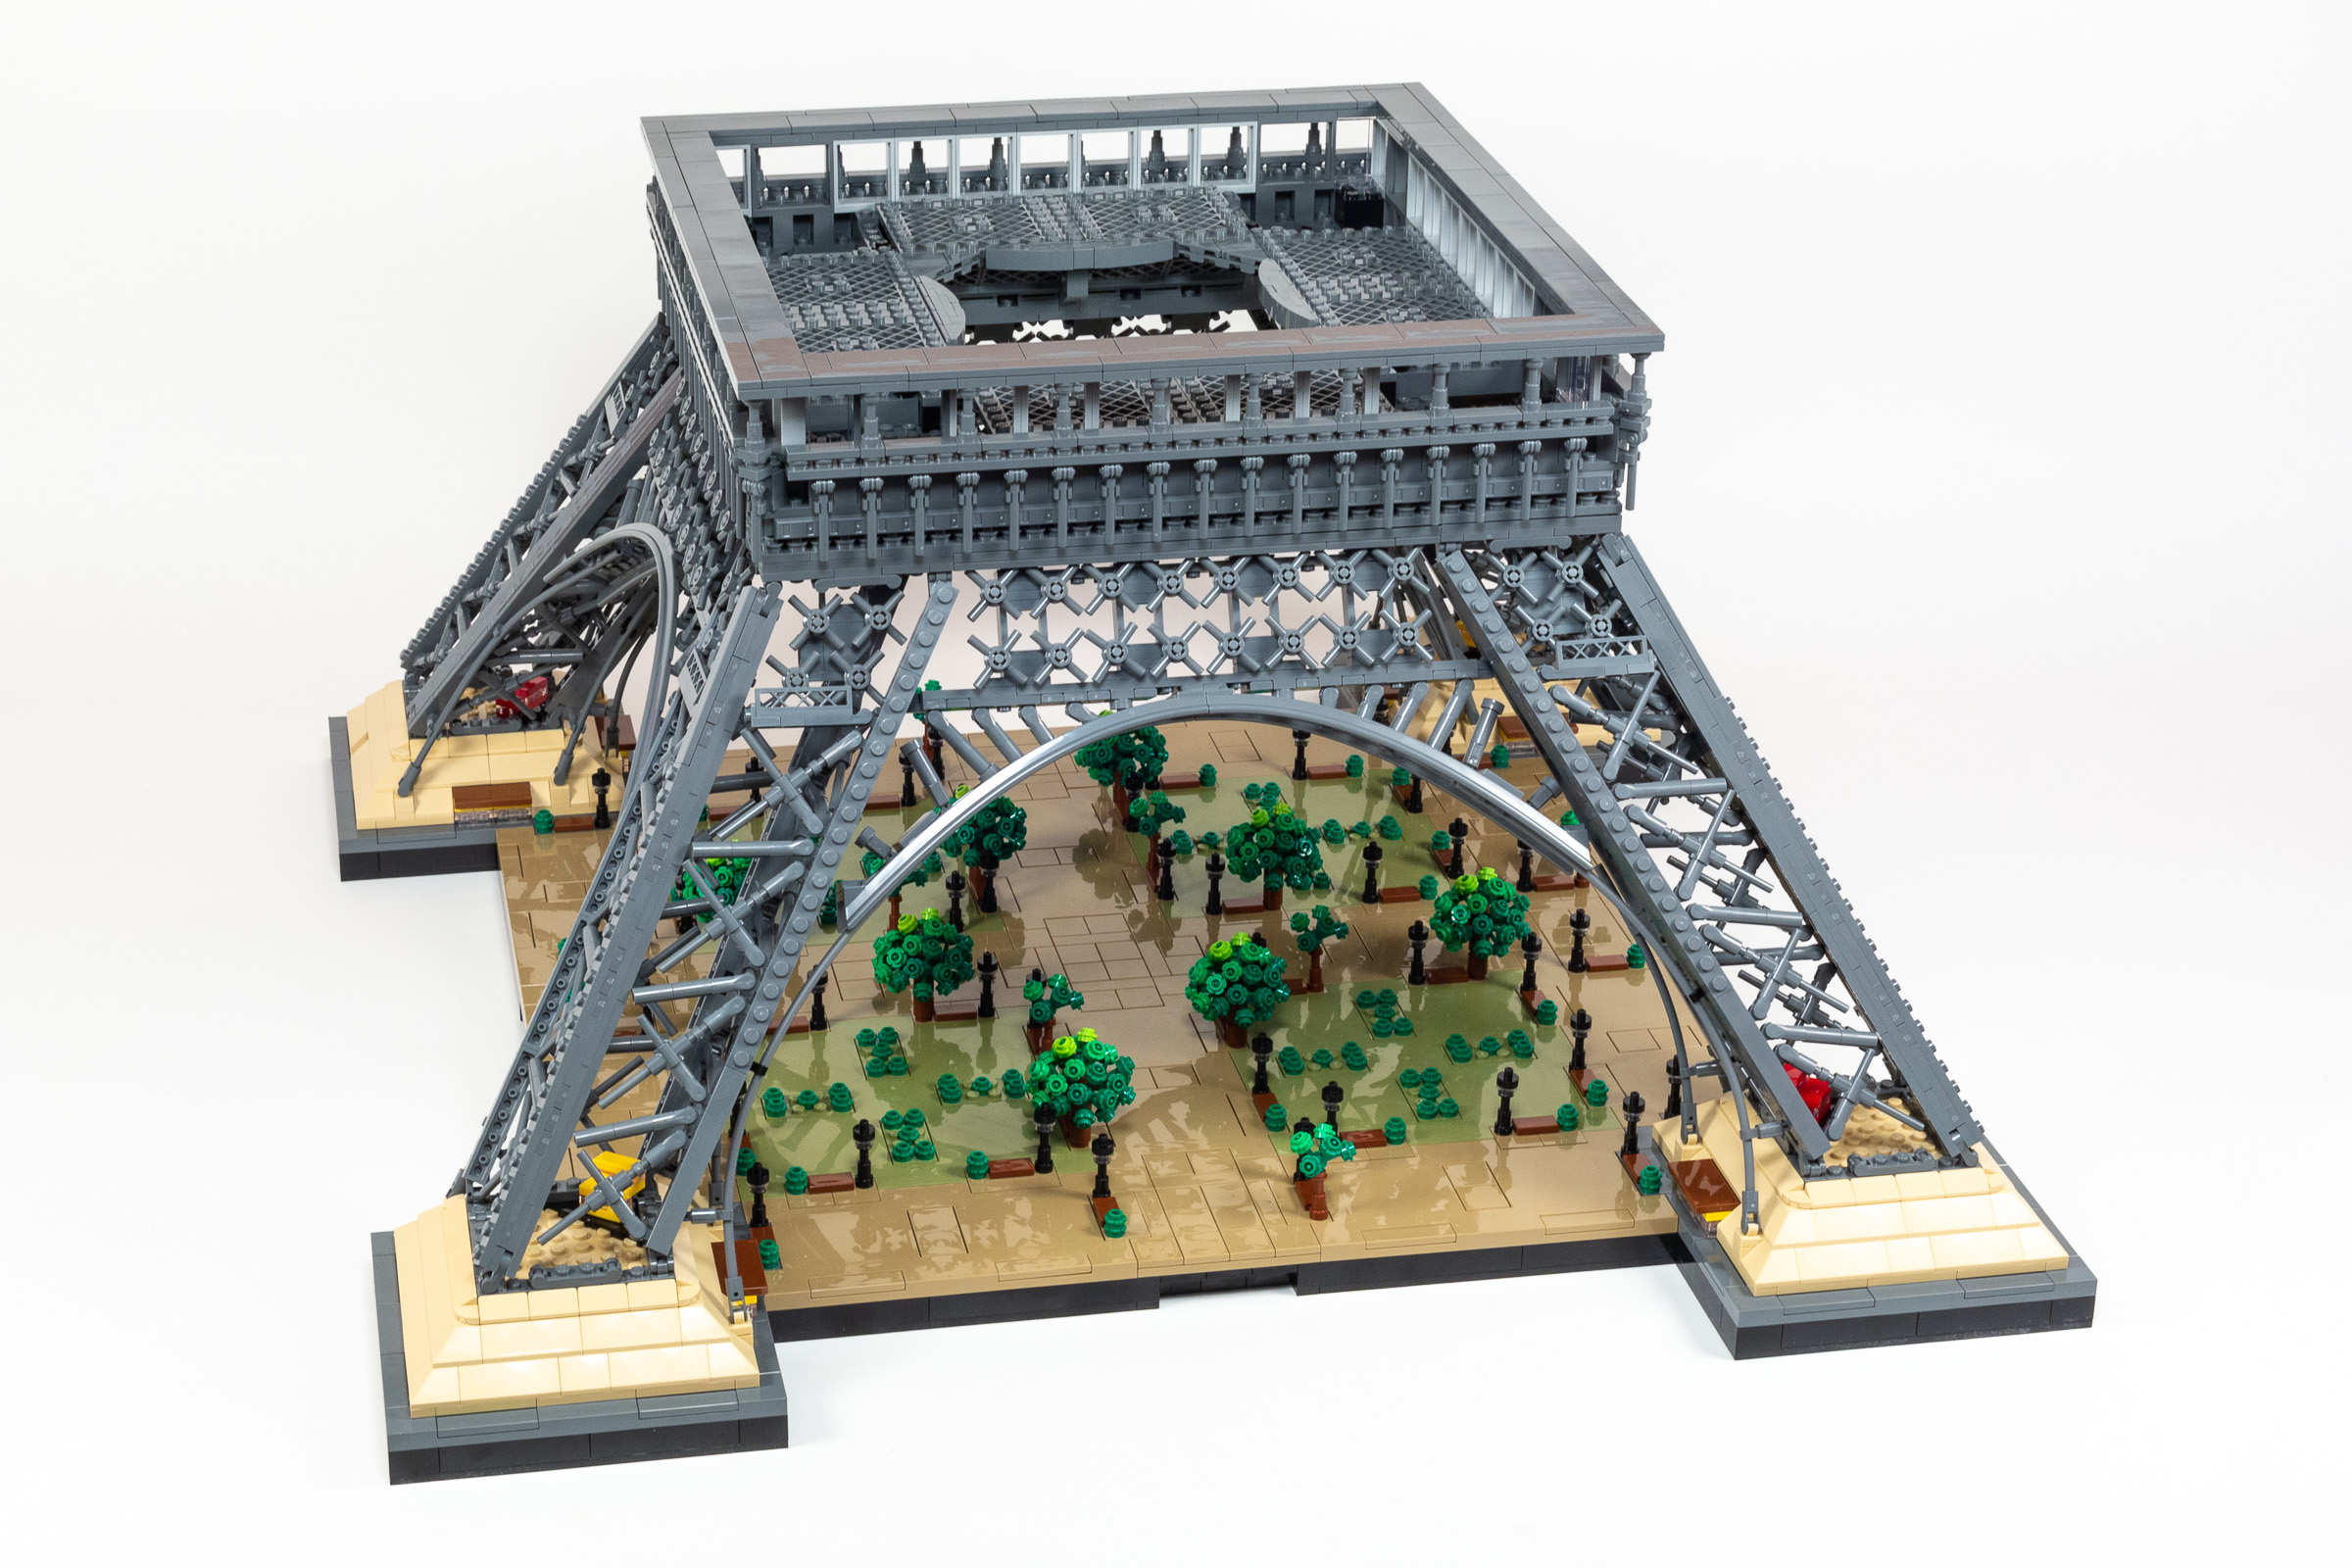 Lego 10307 Tour Eiffel Revue détaillée – Lightailing